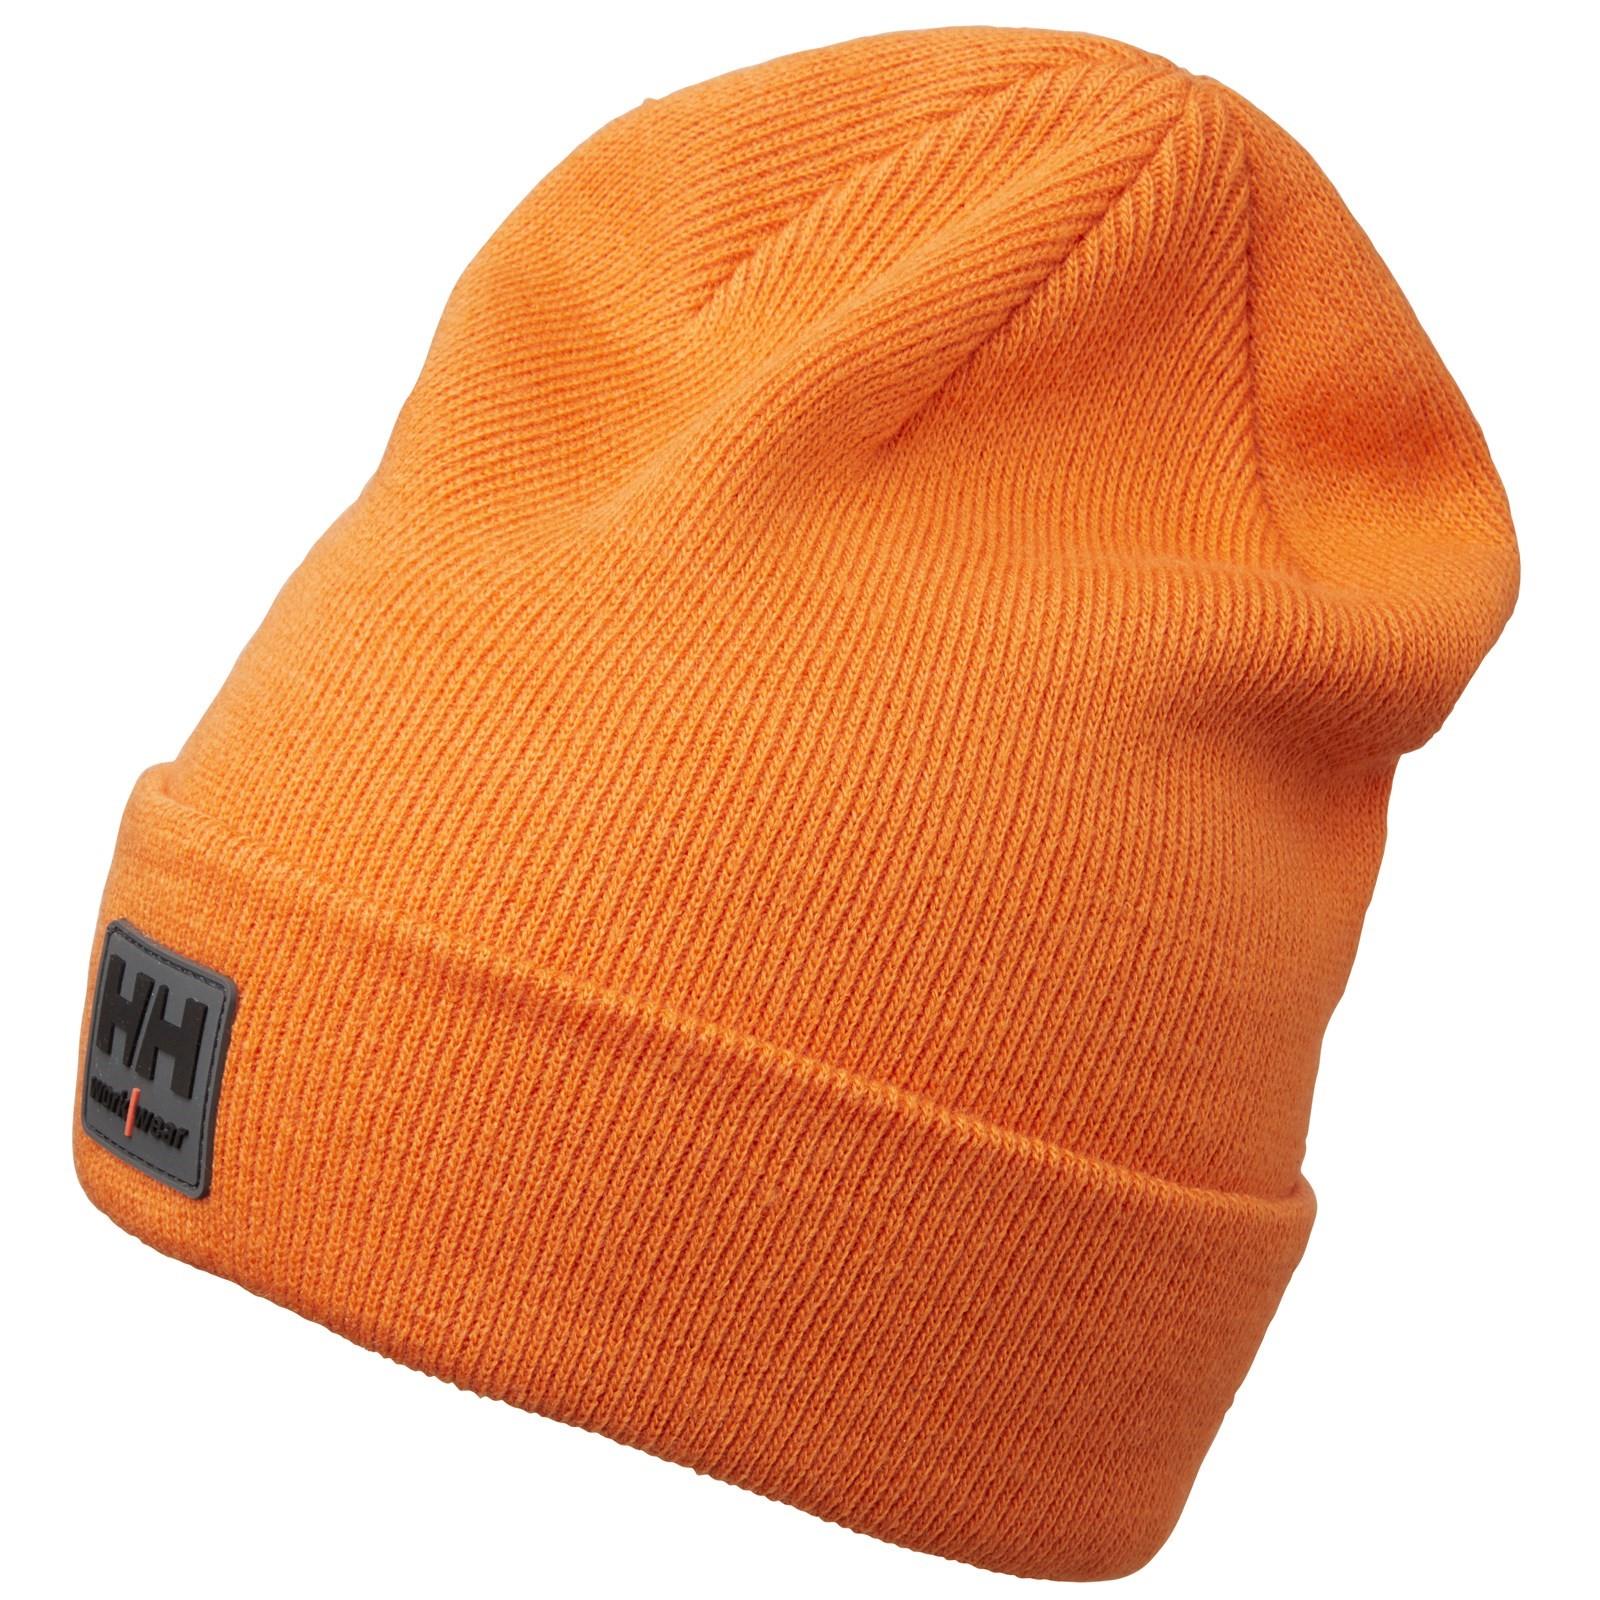 Helly Hansen Kensington dark orange knitted beanie cap #79811